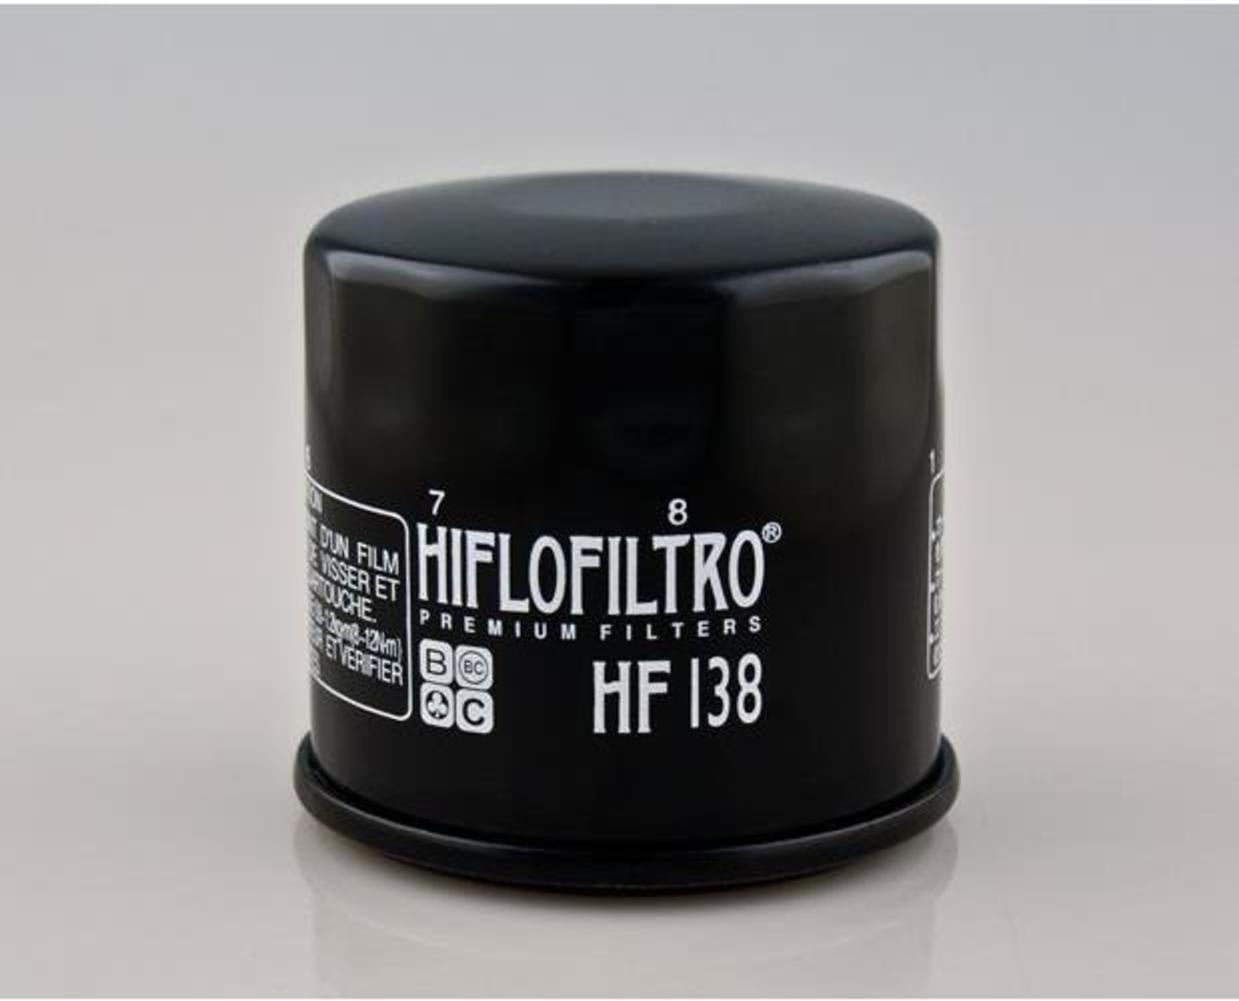 Hiflo Oil Filter HF138 Suzuki GSF1200 T,V,W,X Bandit 1996-1999